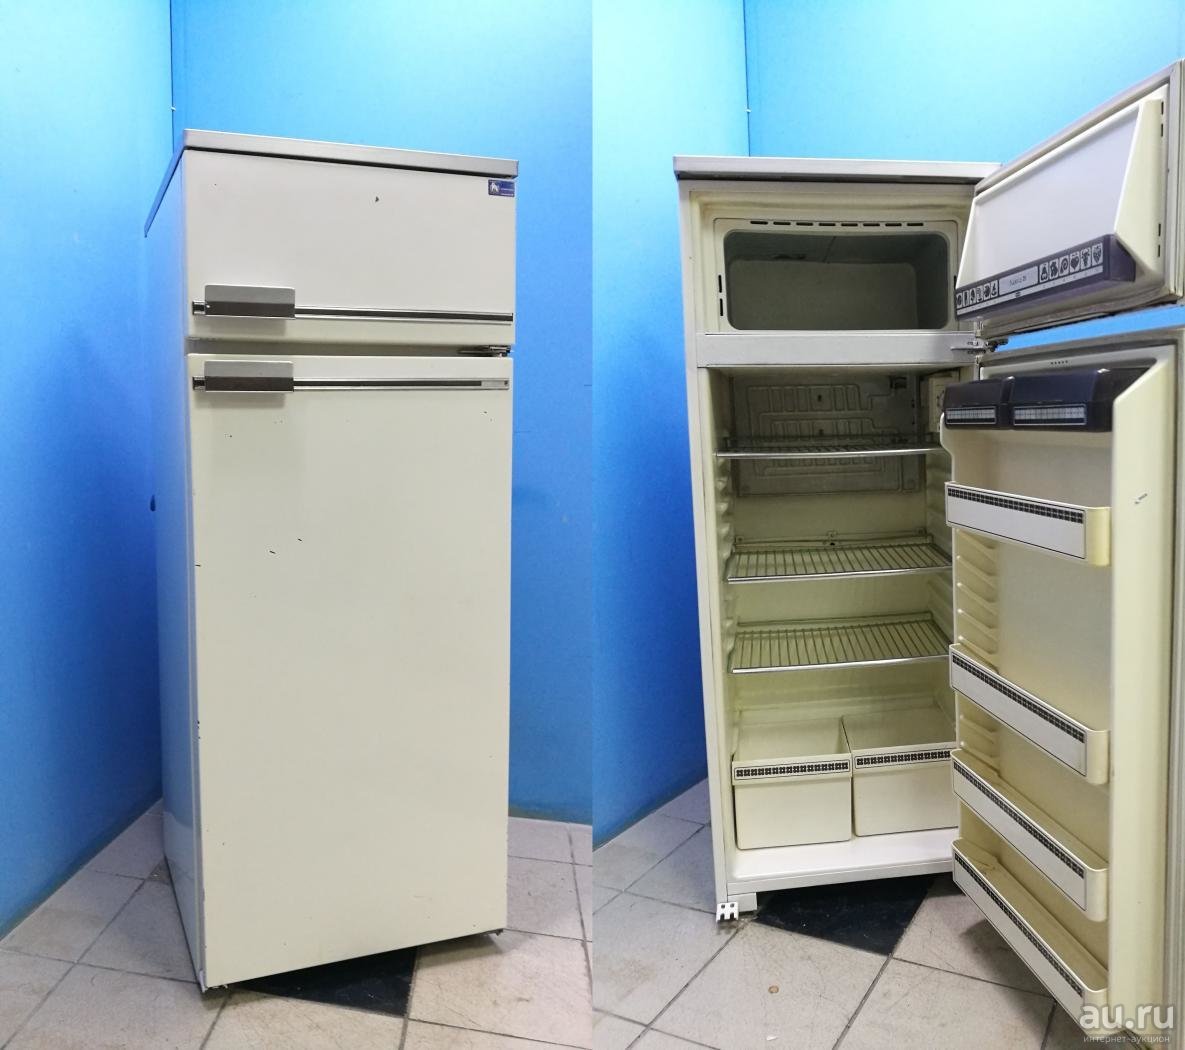 Авито продажа б у техники. Холодильник Бирюса 6033. Холодильник Бирюса 2-х камерный. Холодильник Бирюса старый однокамерный. Бытовой холодильник «Бирюса r110са».